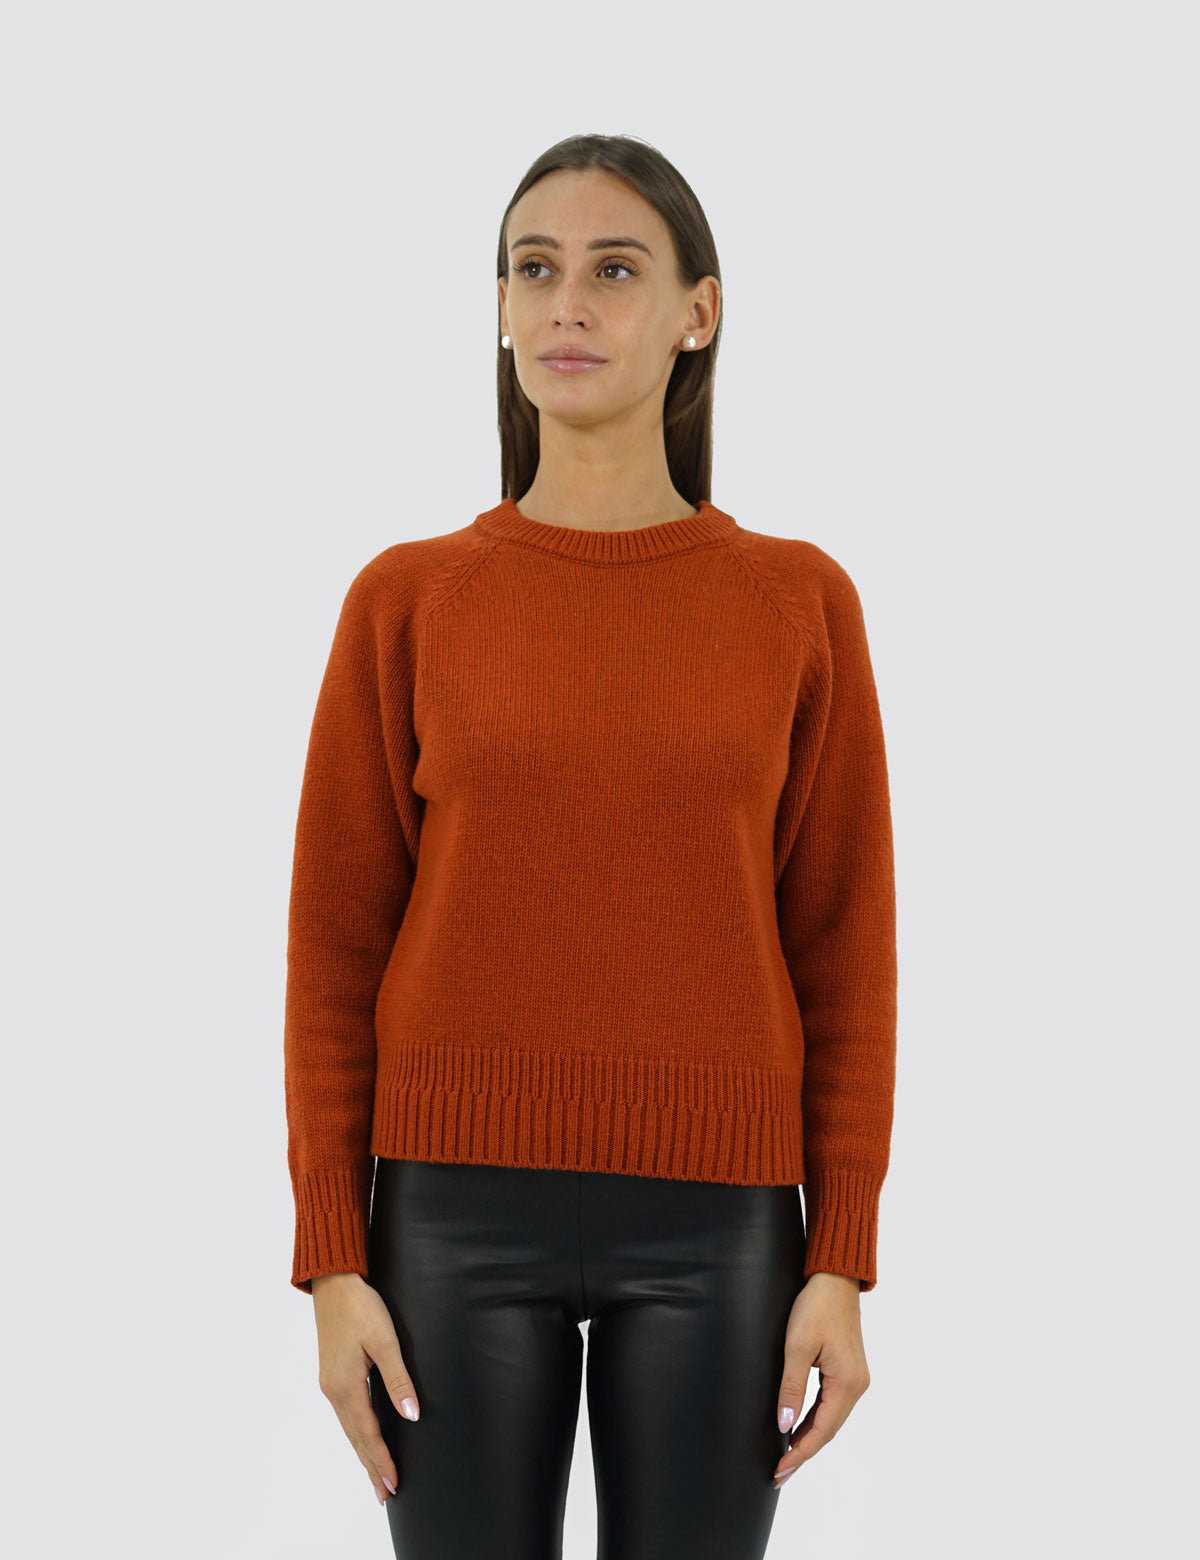 Eleganter Raglan-Pullover mit Rundhalsausschnitt – Damen-Winterpullover – Herbst/Winter – recycelte Wollmischung – hergestellt in Italien – Brunella Gori